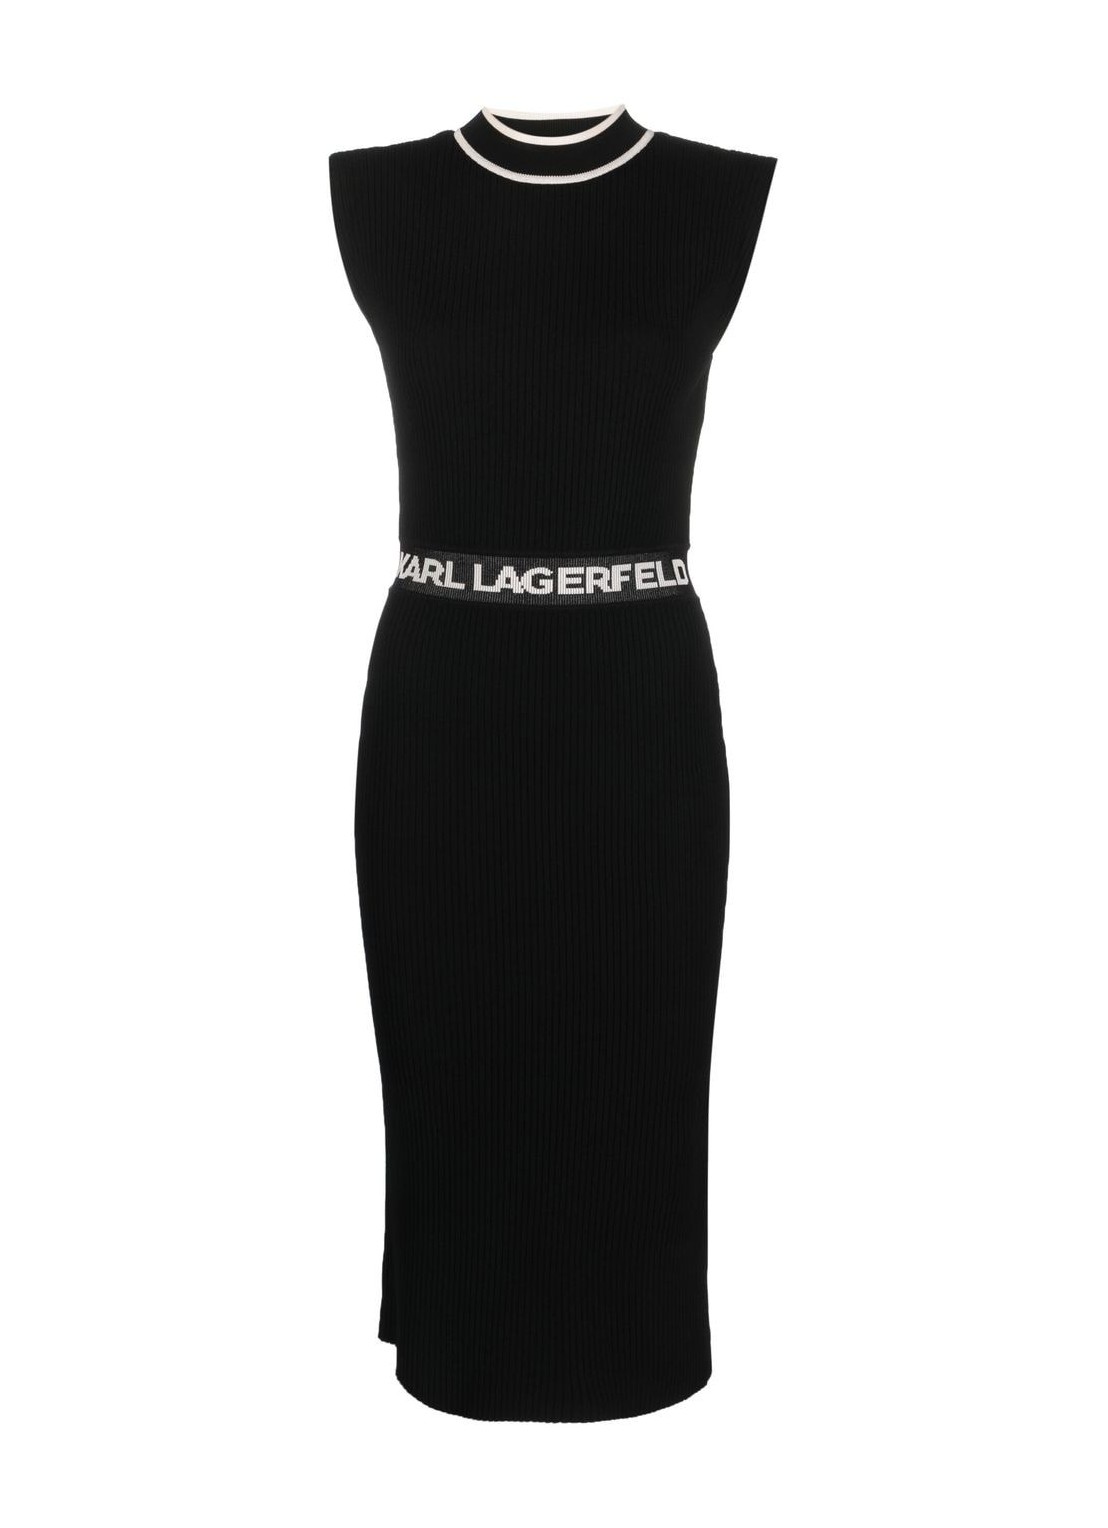 Vestido karl lagerfeld dress woman slvs high neck knit dress 235w1310 998 talla L
 